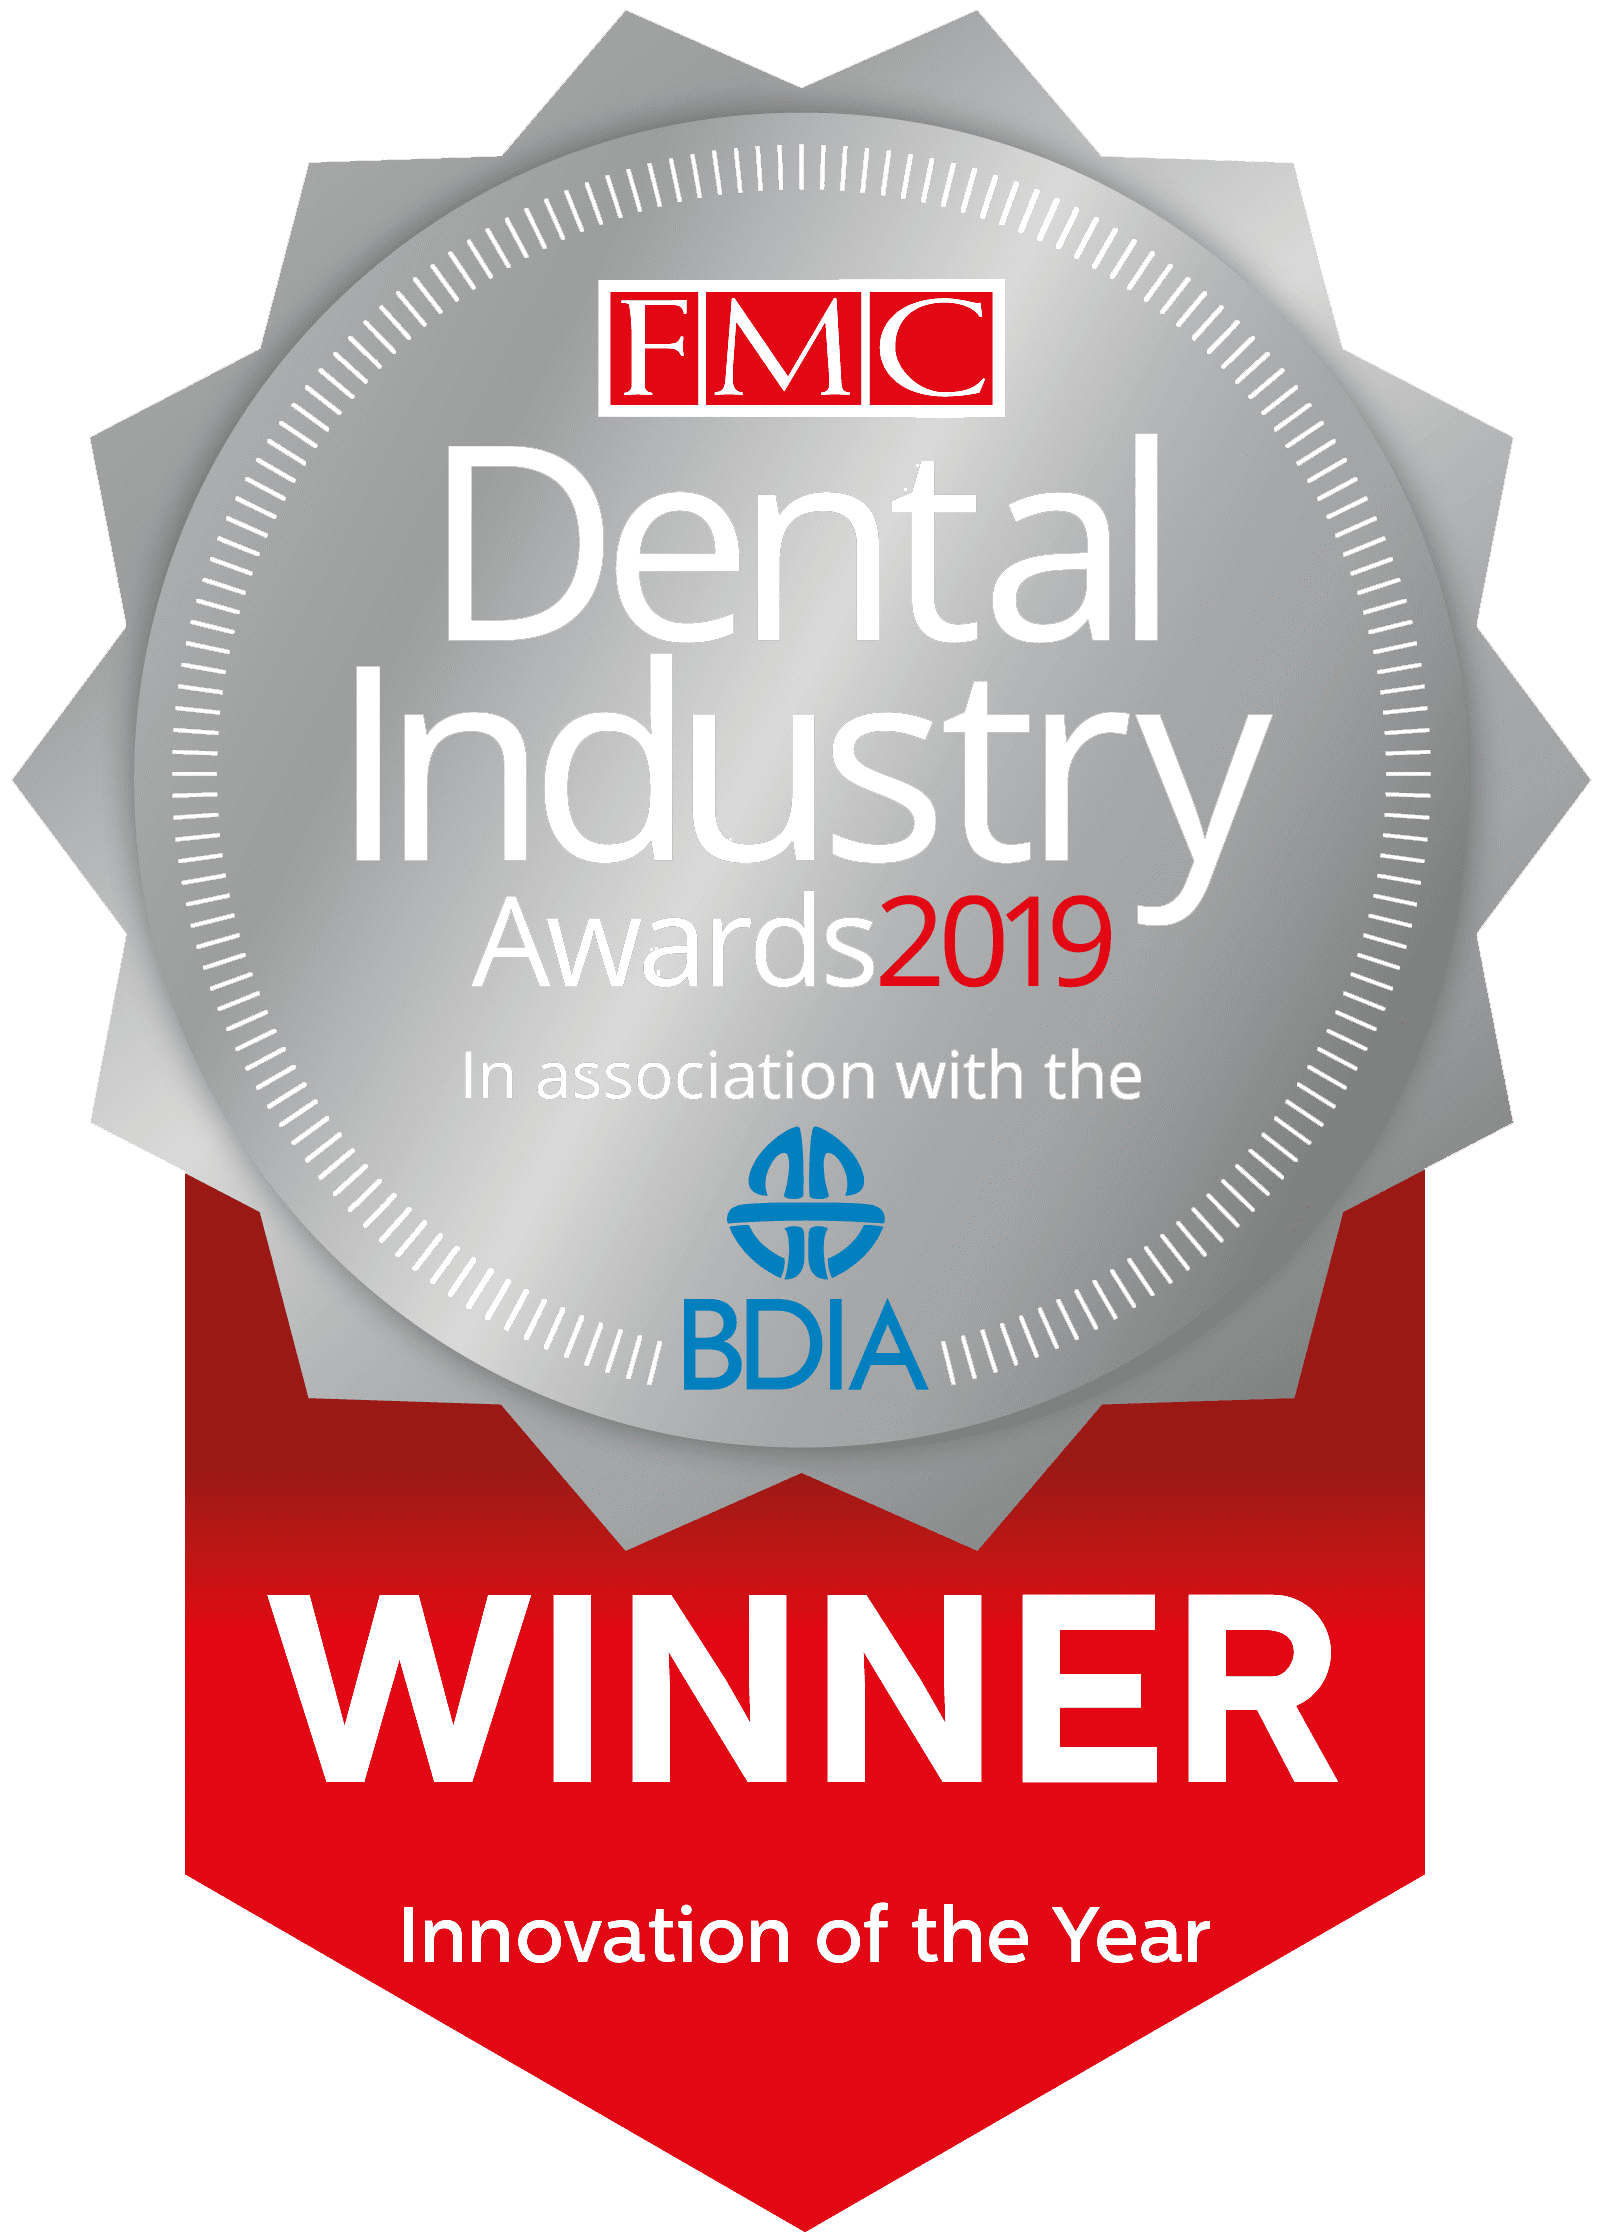 Dental industry innovation winner 2019